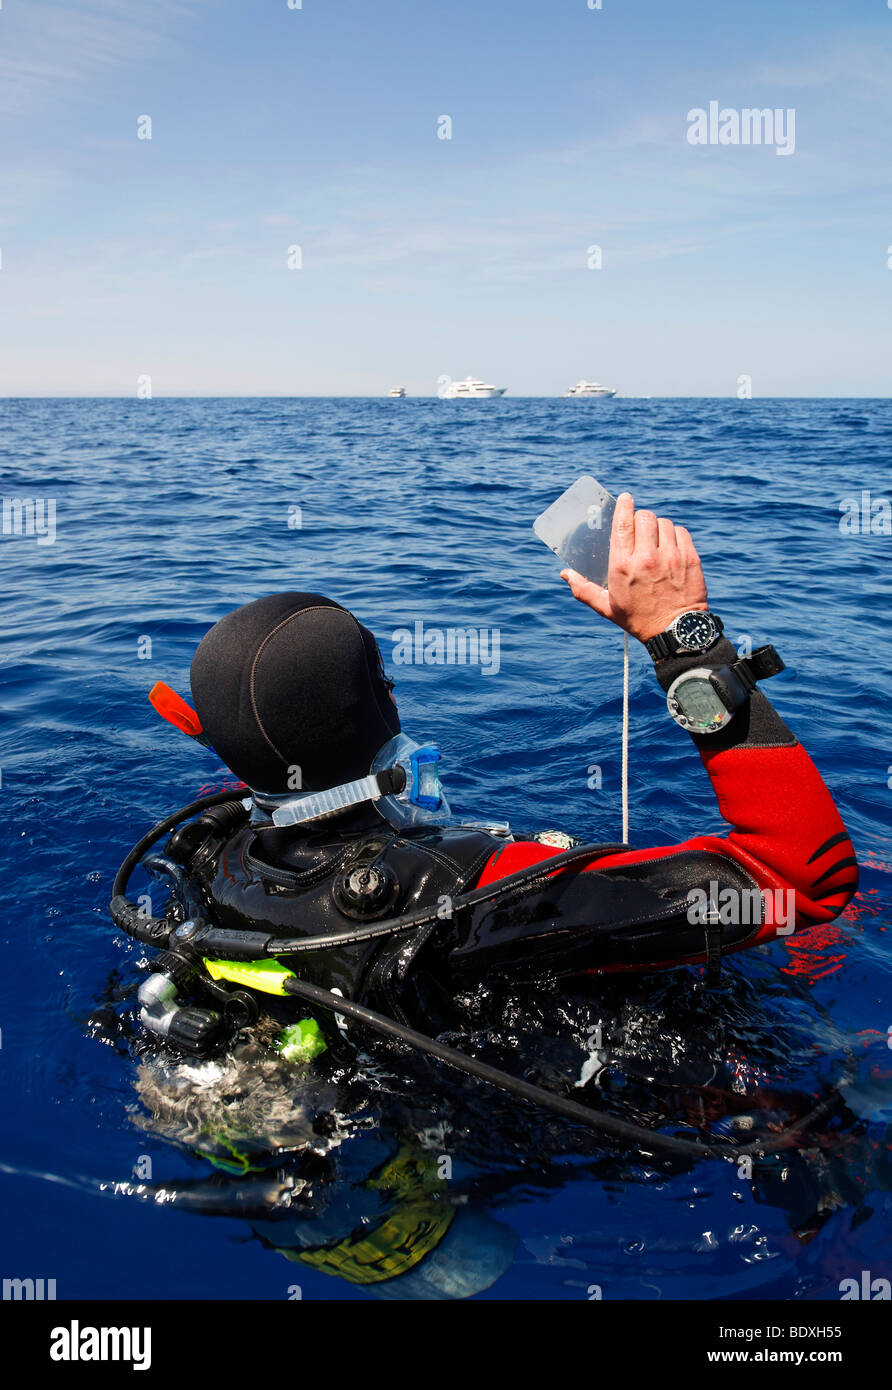 Plongeur à la dérive en mer tente d'obtenir l'attention des gens sur les bateaux de plongée sur l'horizon par un clignotement à l'aide d'un miroir, l'Égypte, R Banque D'Images